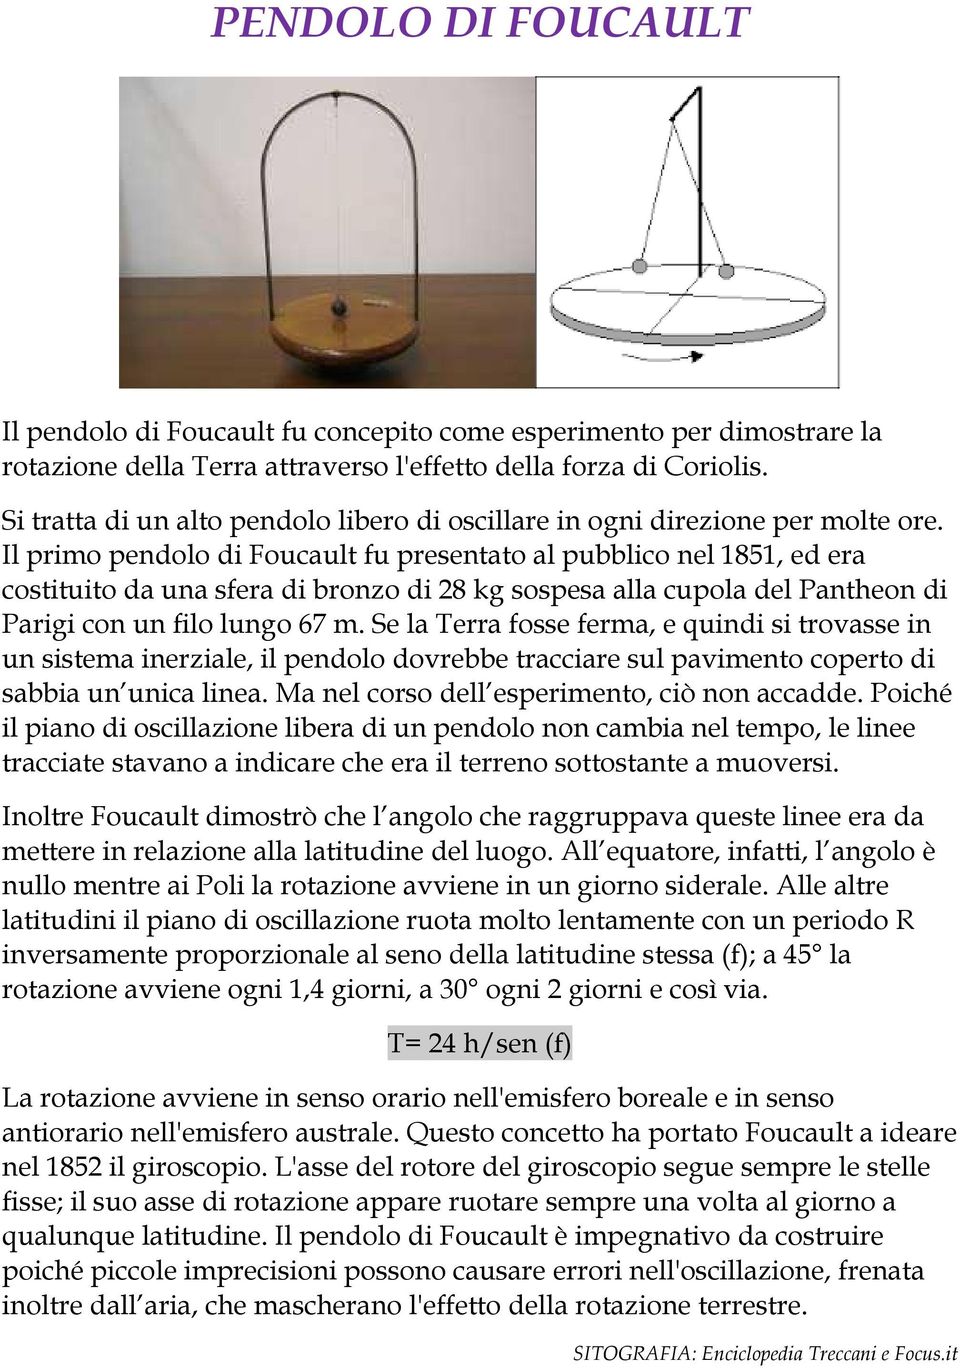 Il primo pendolo di Foucault fu presentato al pubblico nel 1851, ed era costituito da una sfera di bronzo di 28 kg sospesa alla cupola del Pantheon di Parigi con un filo lungo 67 m.